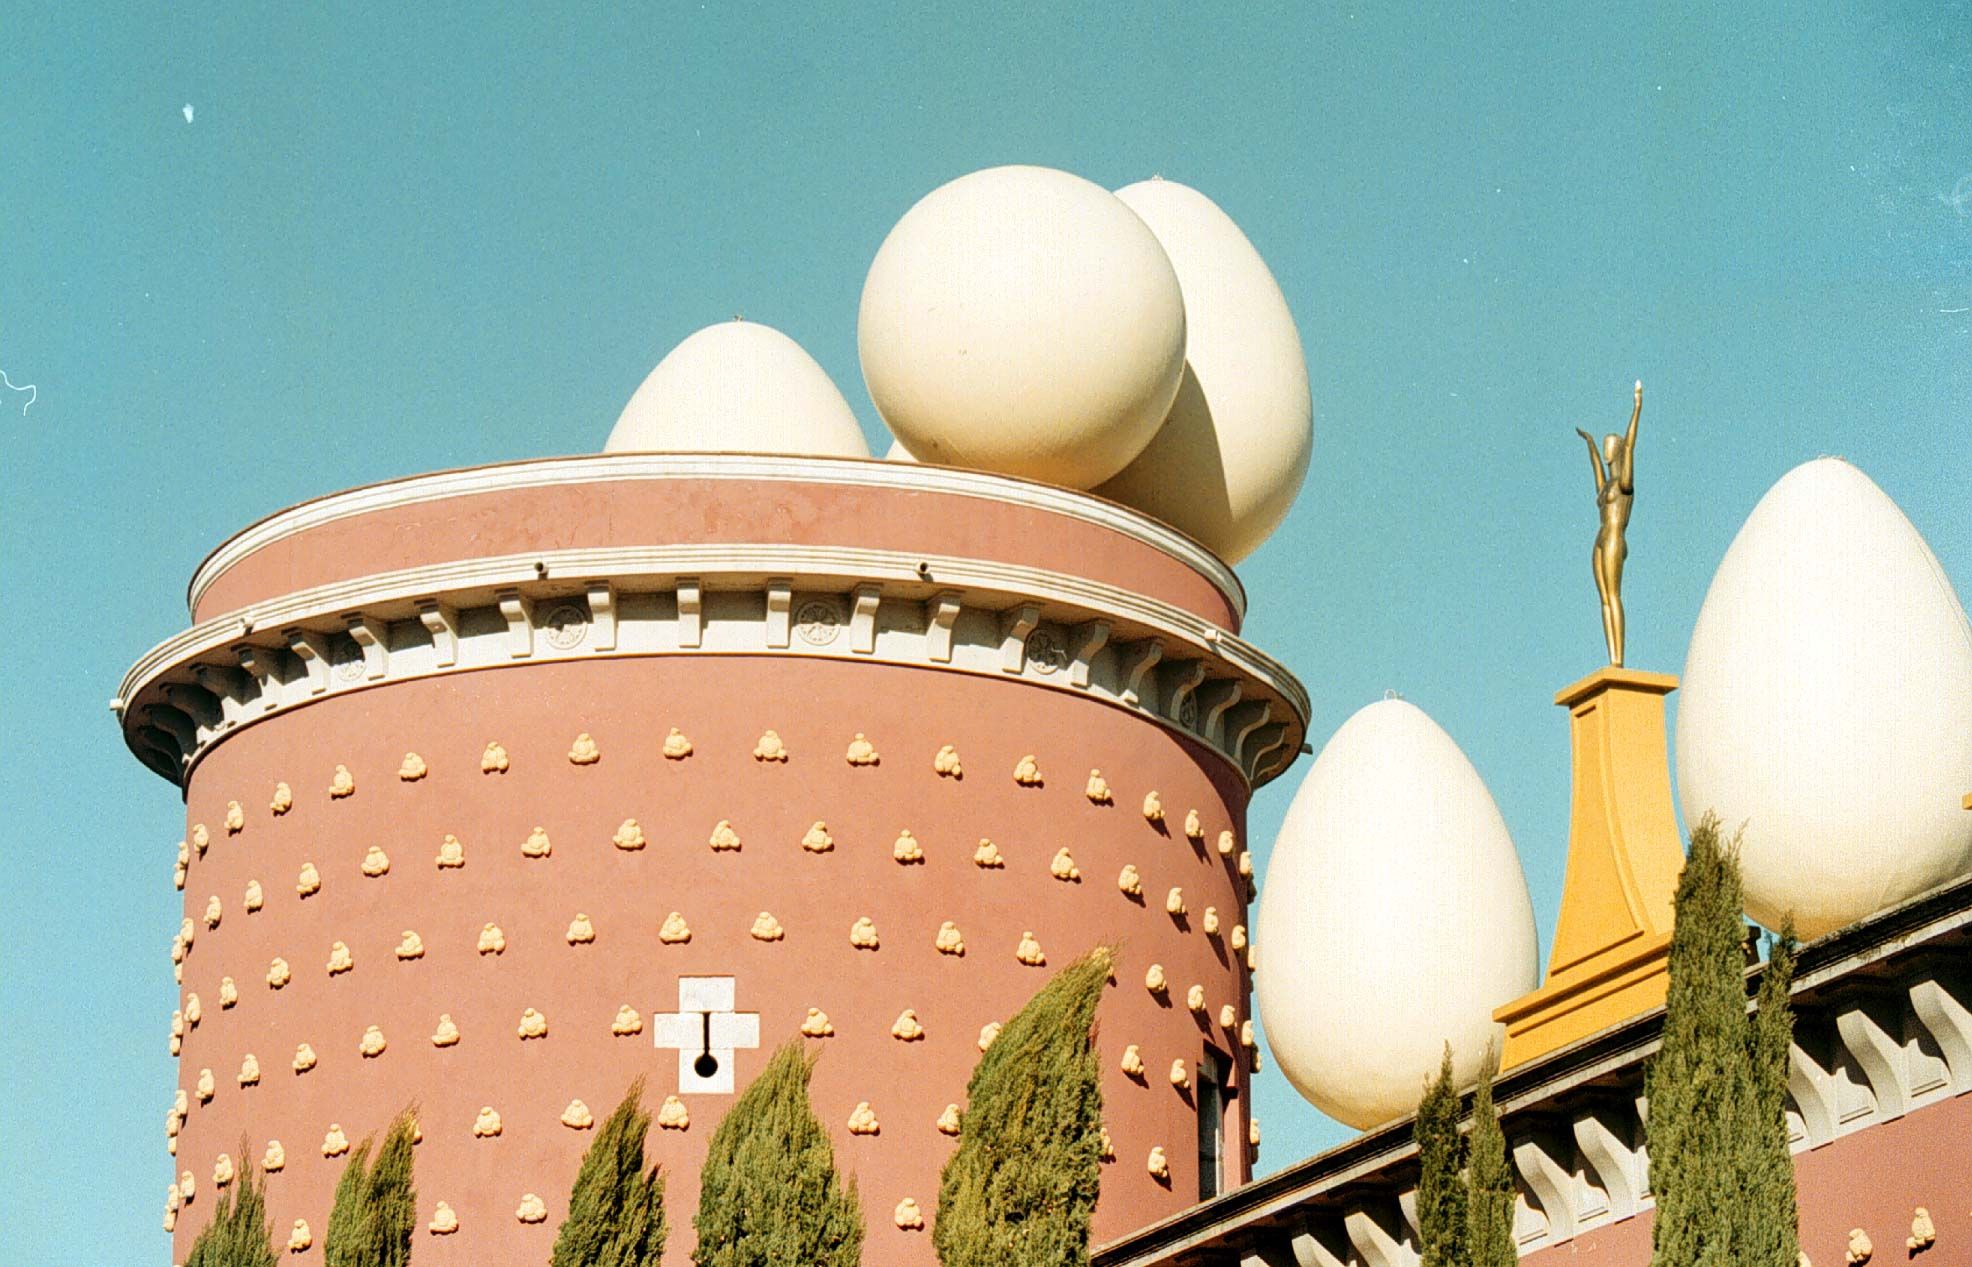 El Teatro-Museo de Figueres dedicado a Dalí.